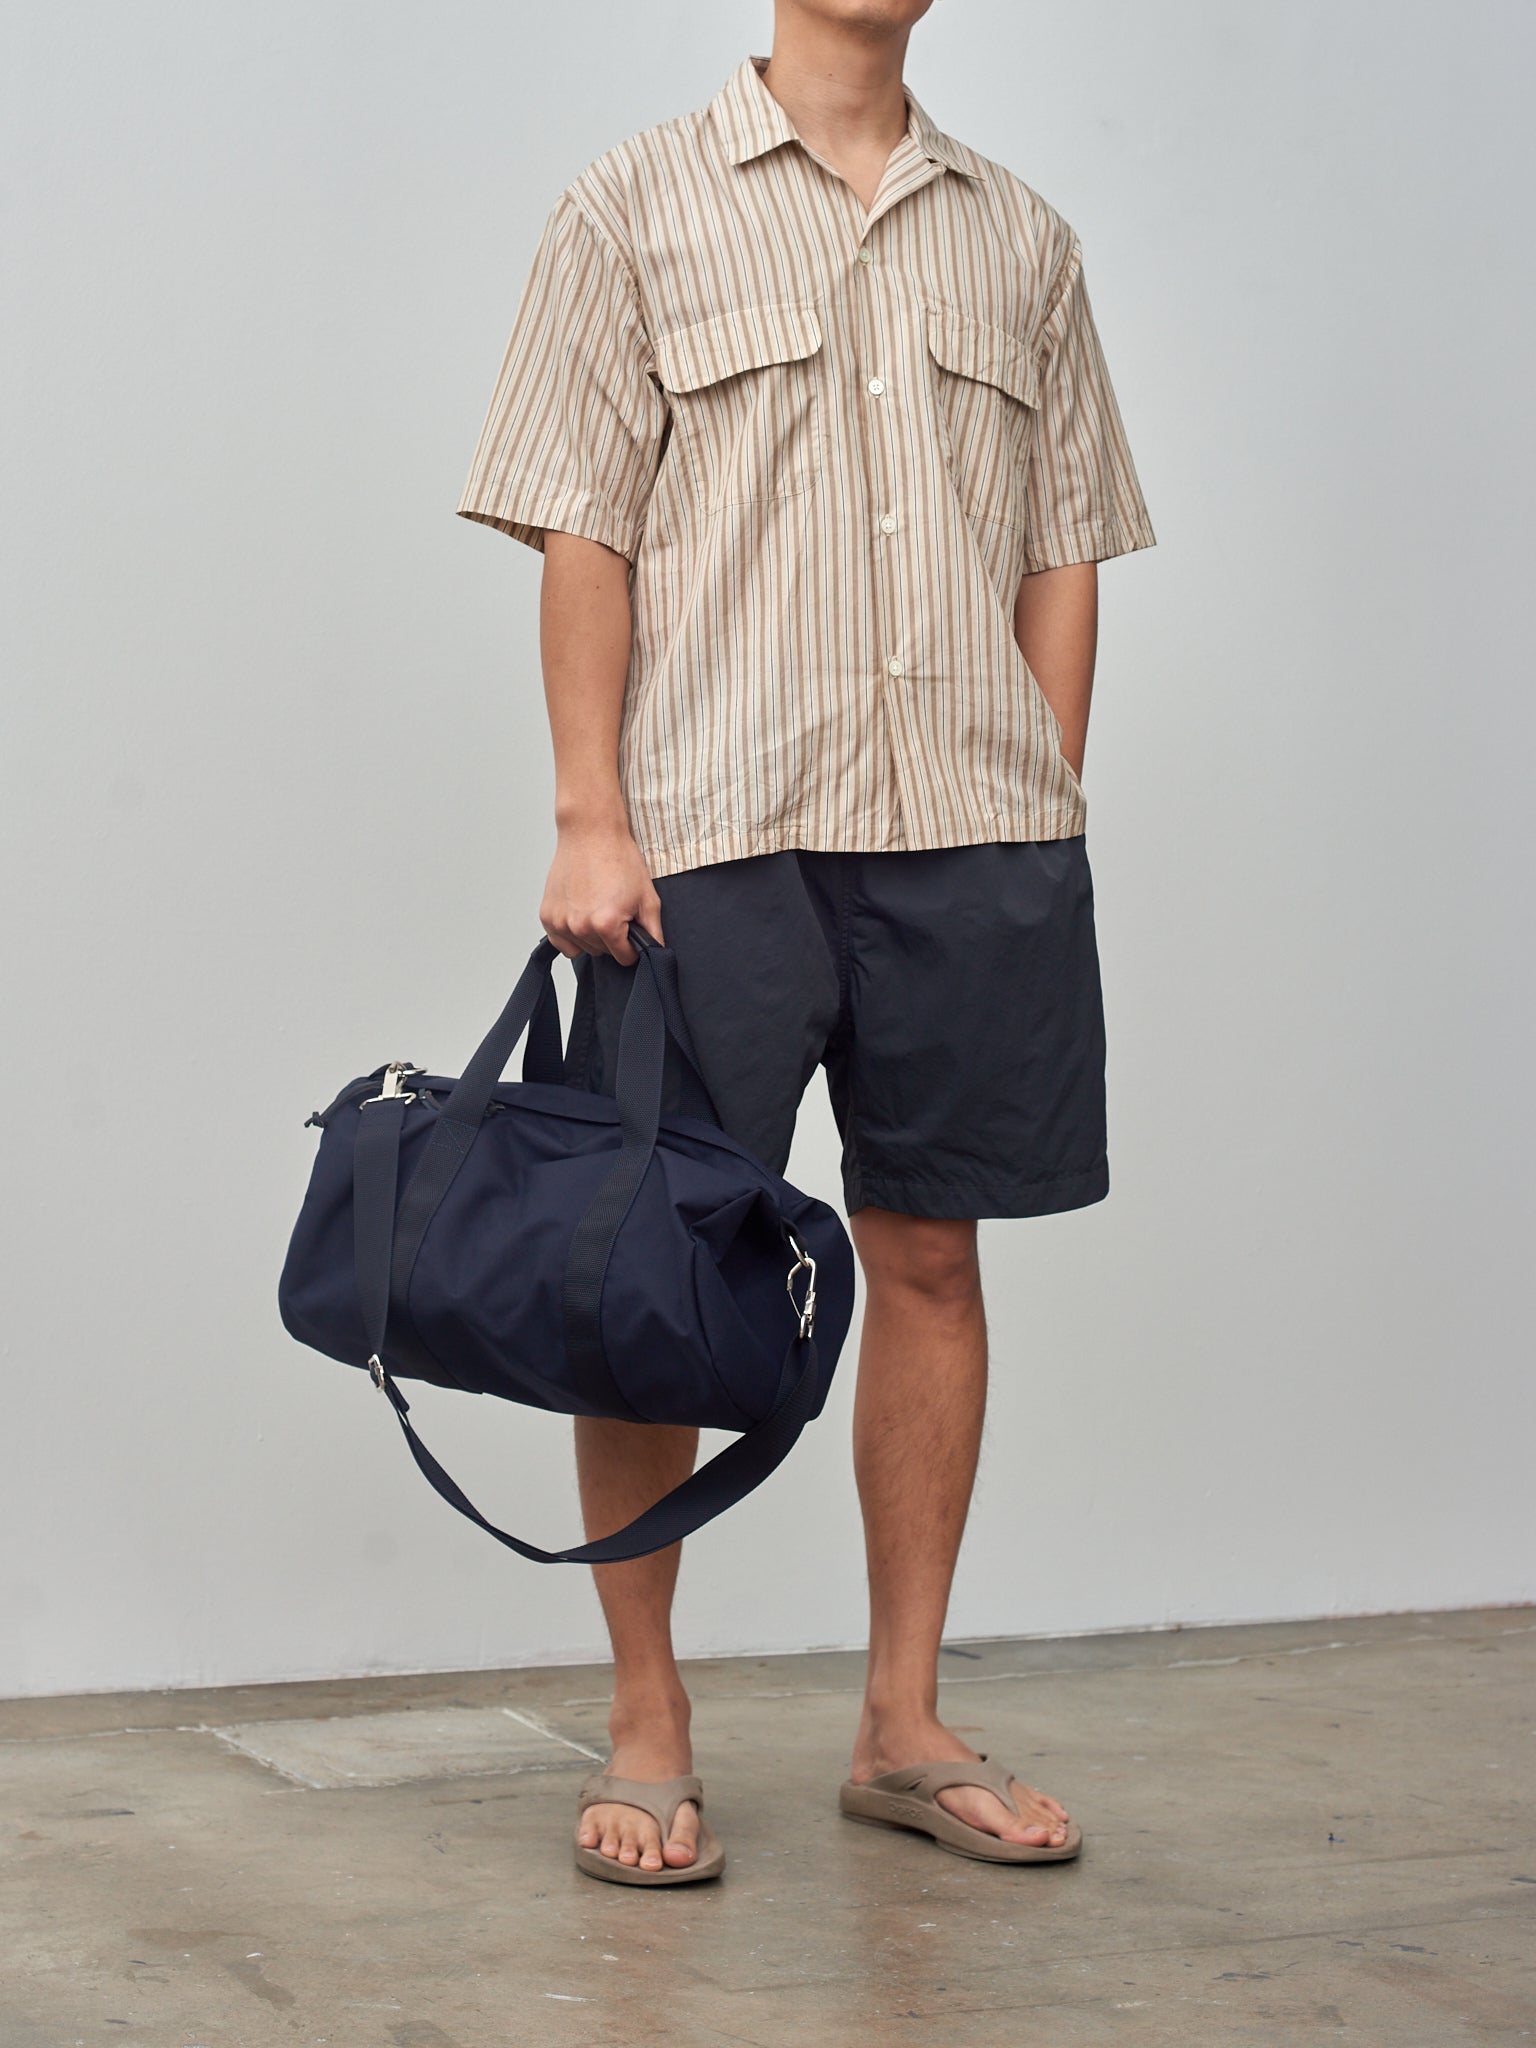 Namu Shop - Kaptain Sunshine Short Sleeve Open Collar Shirt - Beige Stripe